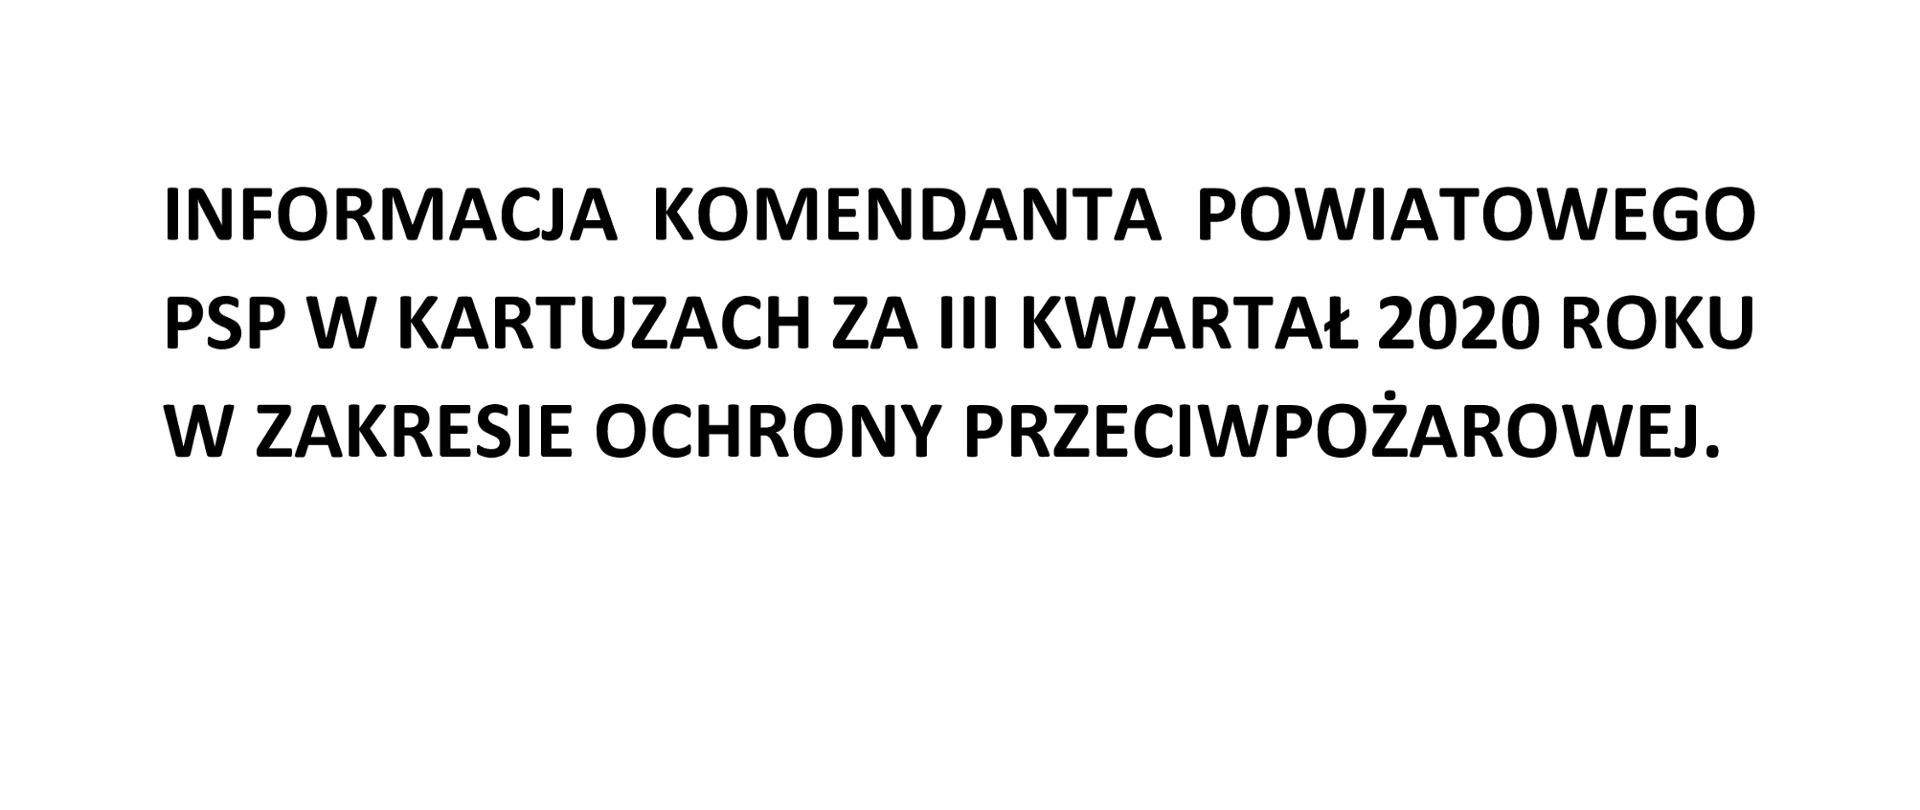 Informacja kwartalna Komendanta Powiatowego PSP w Kartuzach za III kwartał 2020 r. w zakresie ochrony przeciwpożarowej.